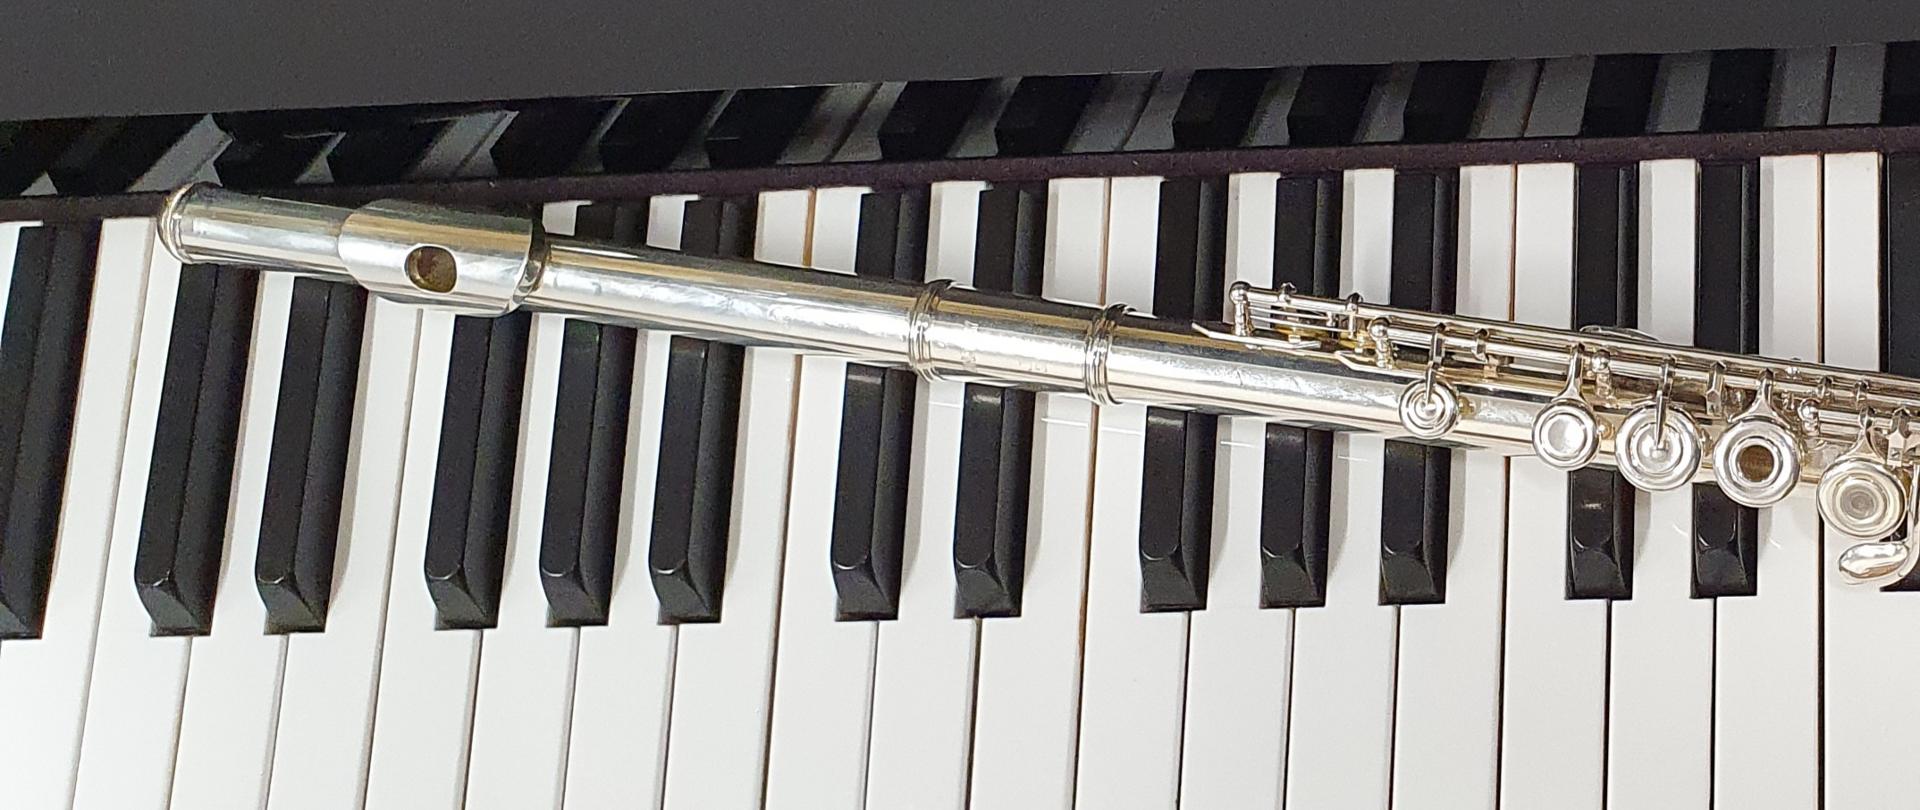 zdjęcie przedstawia flet, który umieszczony został na klawiaturze fortepianu.